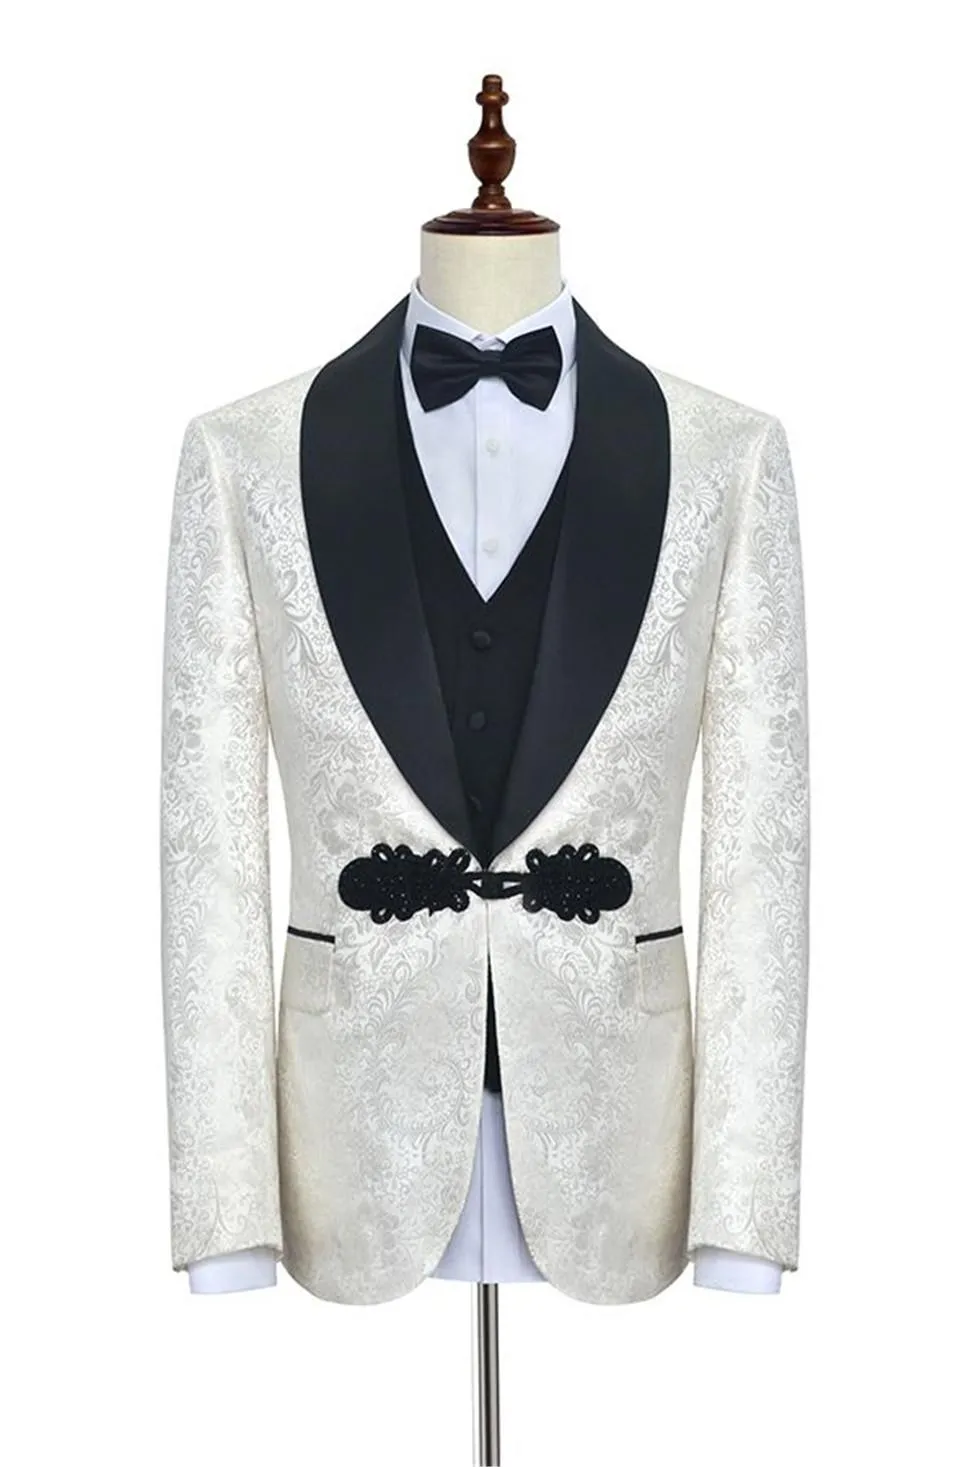 고품질 한 단추 화이트 패턴 화이트 패턴 신랑 턱시도 숄 옷깃 웨딩 / 댄스 파티 / 저녁 식사 Groomsmen 남자 정장 블레이저 (자켓 + 바지 + 조끼 + 넥타이) W1380